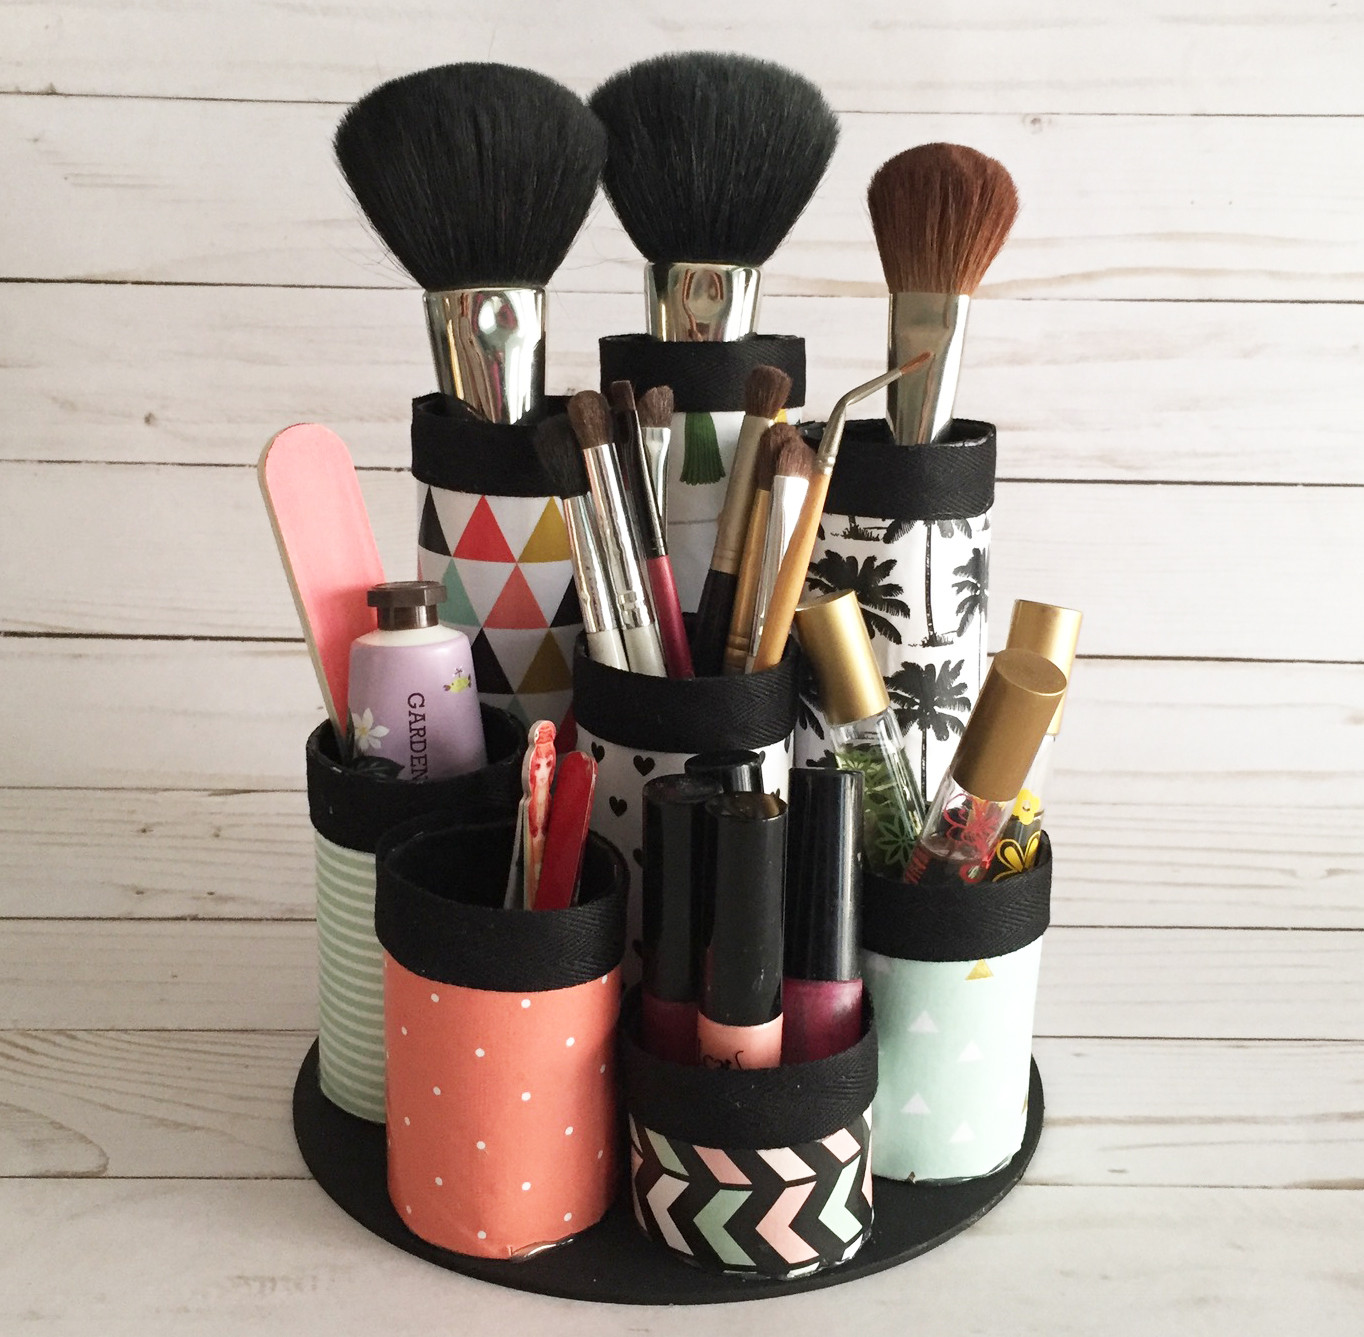 DIY Makeup Organizer Ideas Pinterest
 Makeup Organizers And Storage Ideas For Makeup Junkies